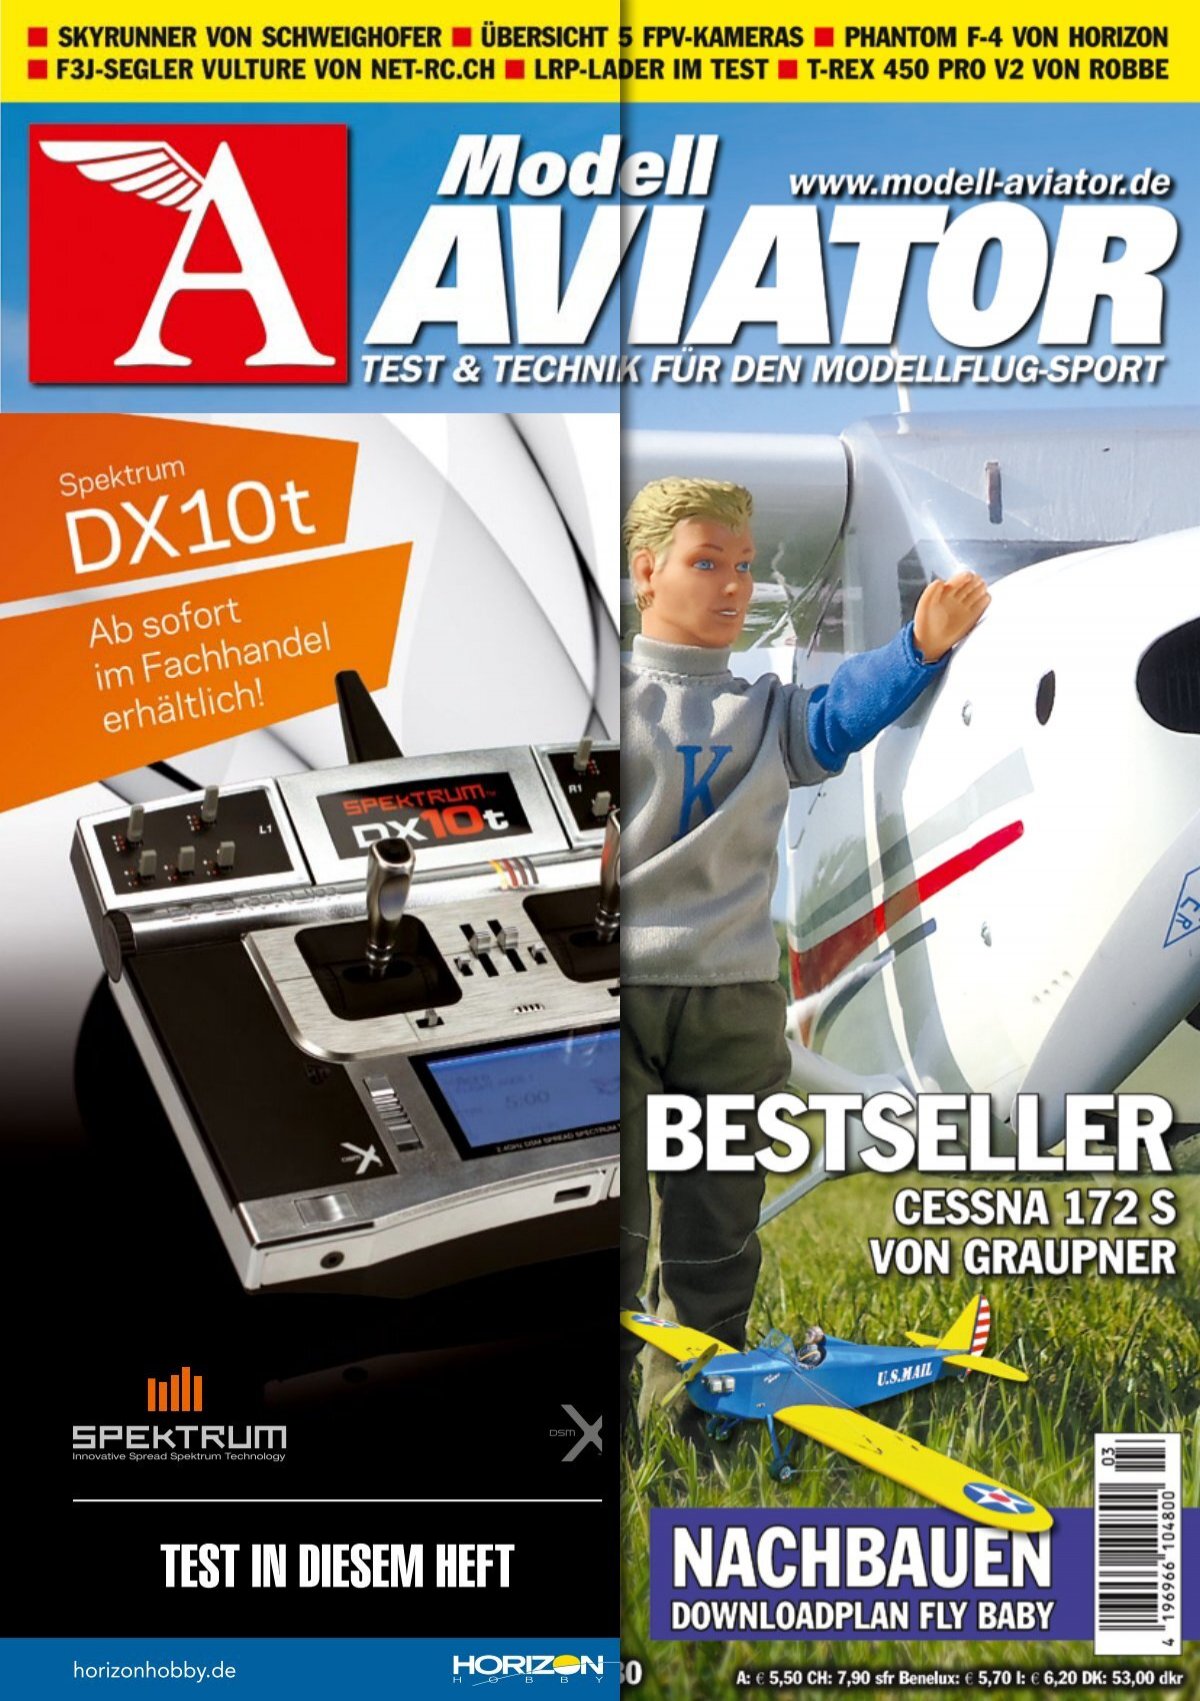 Modell AVIATOR Bestseller, Cessna 172 S von Graupner (Vorschau)